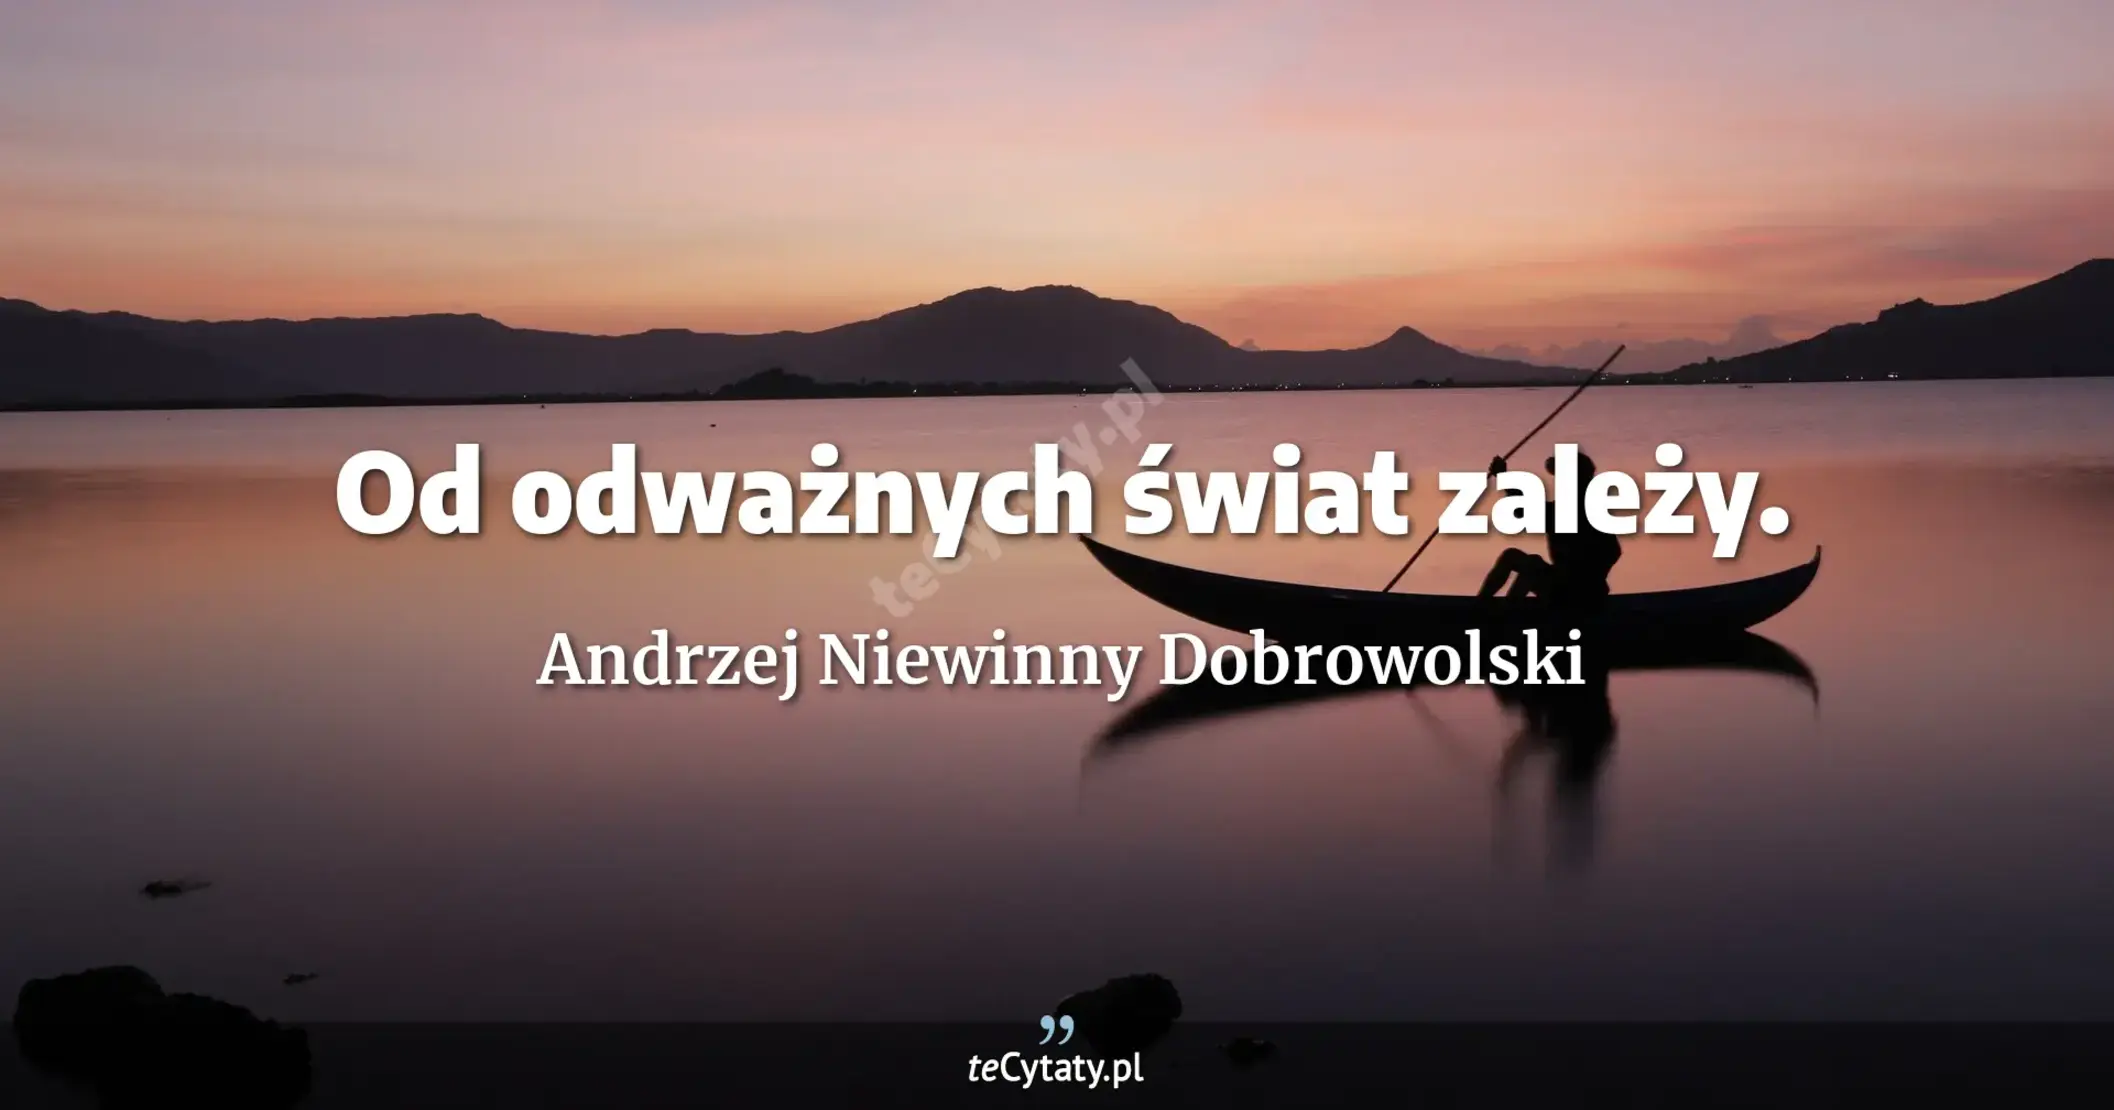 Od odważnych świat zależy. - Andrzej Niewinny Dobrowolski